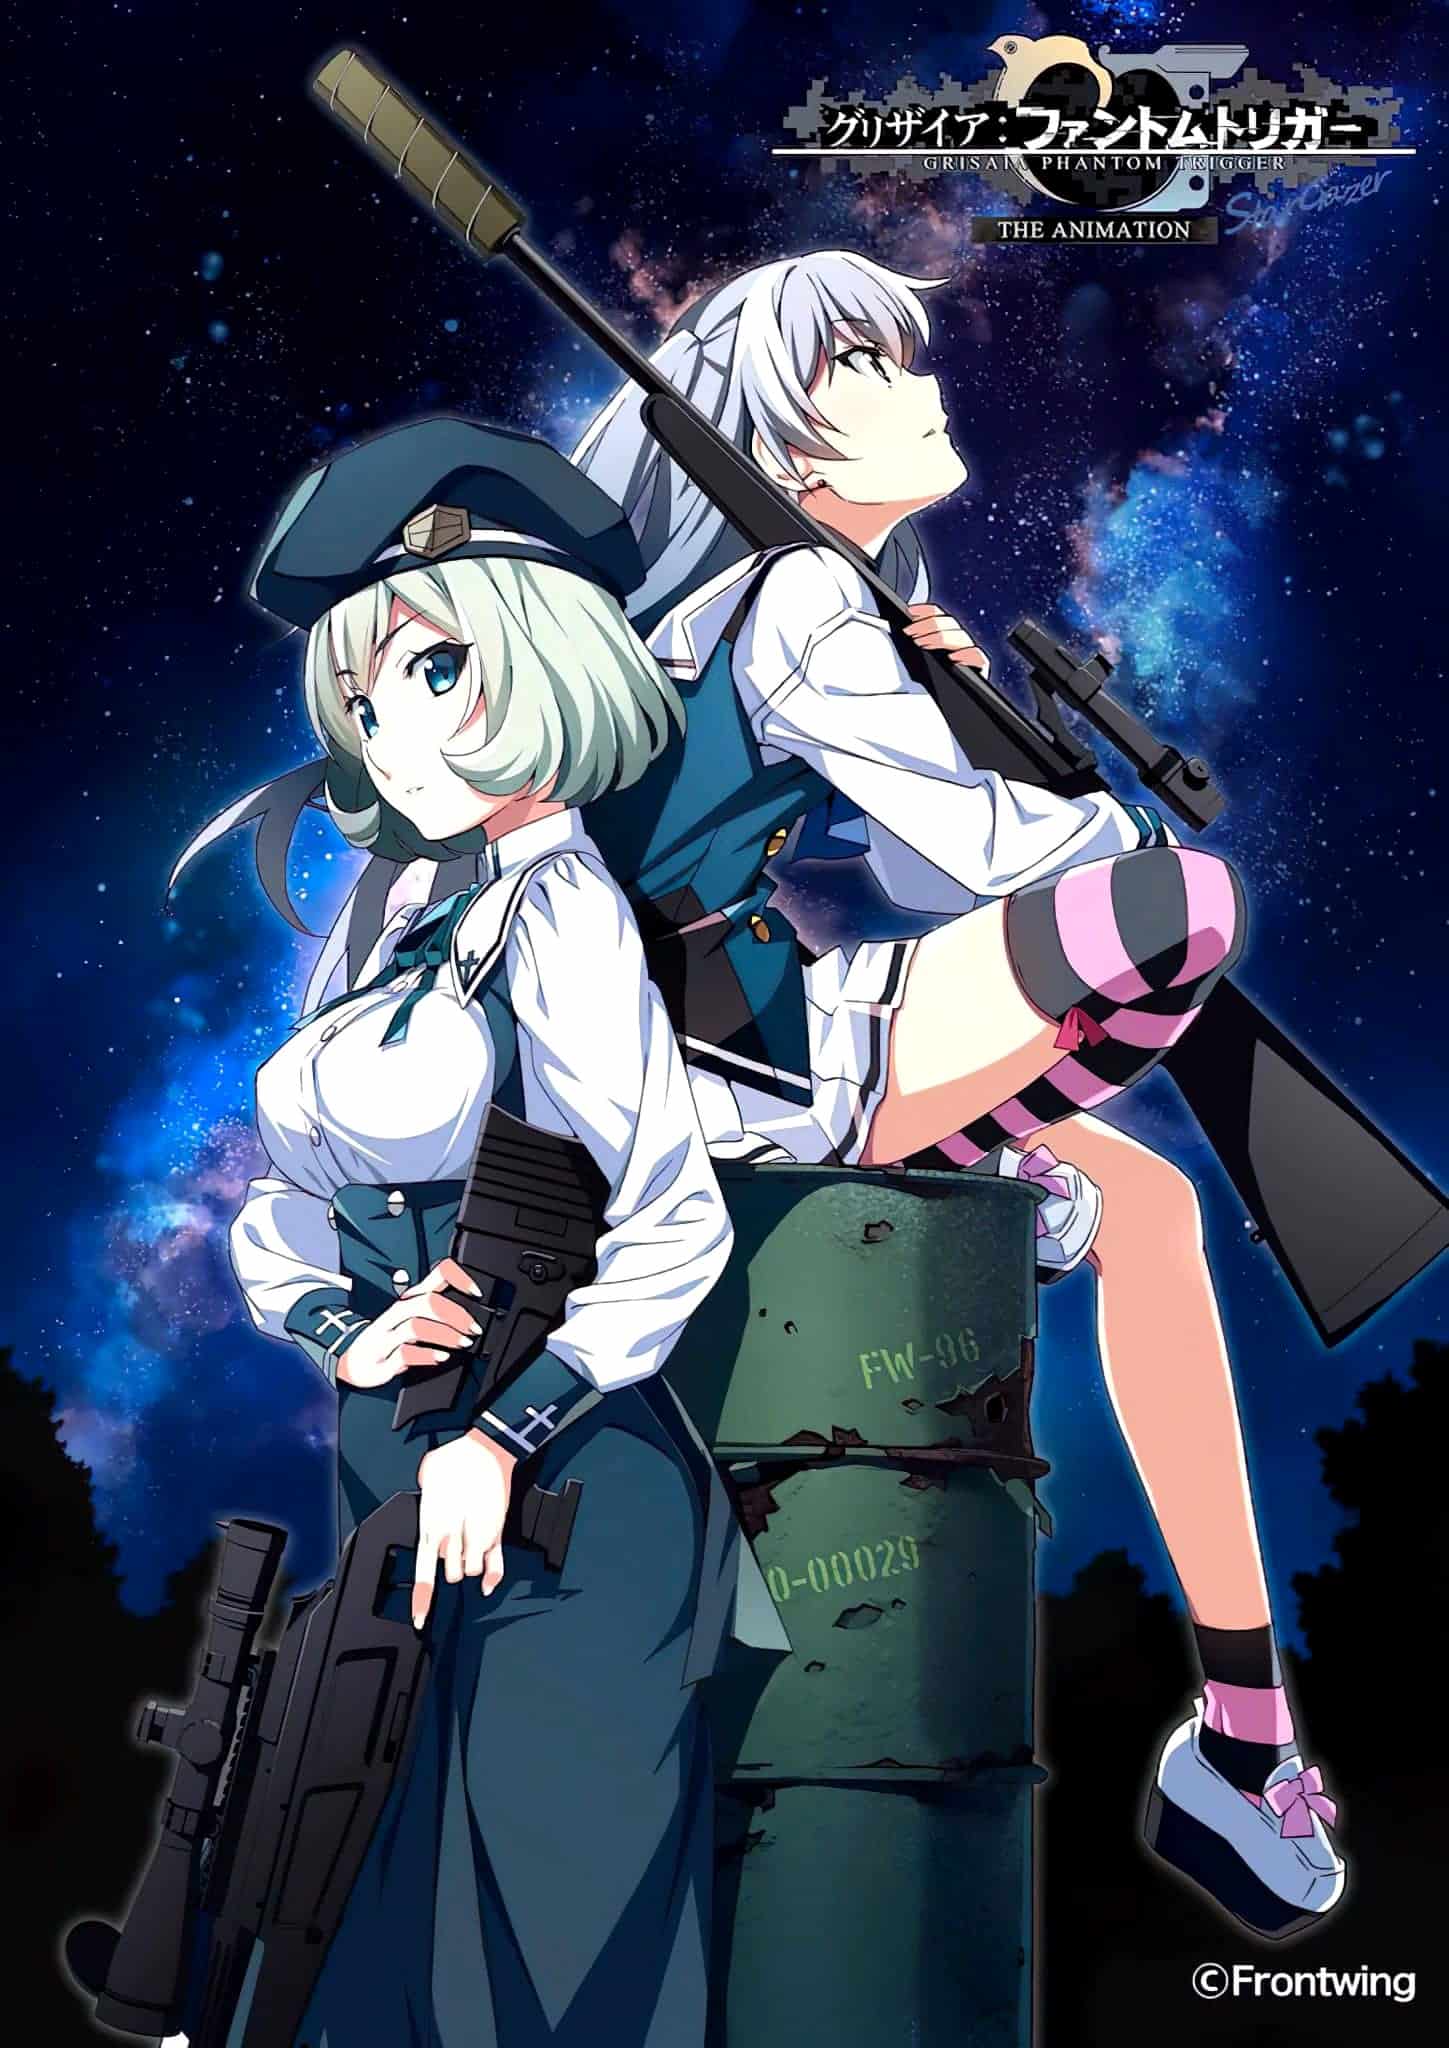 Annonce de Grisaia Phantom Trigger Stargazer parmi les animes automne 2020